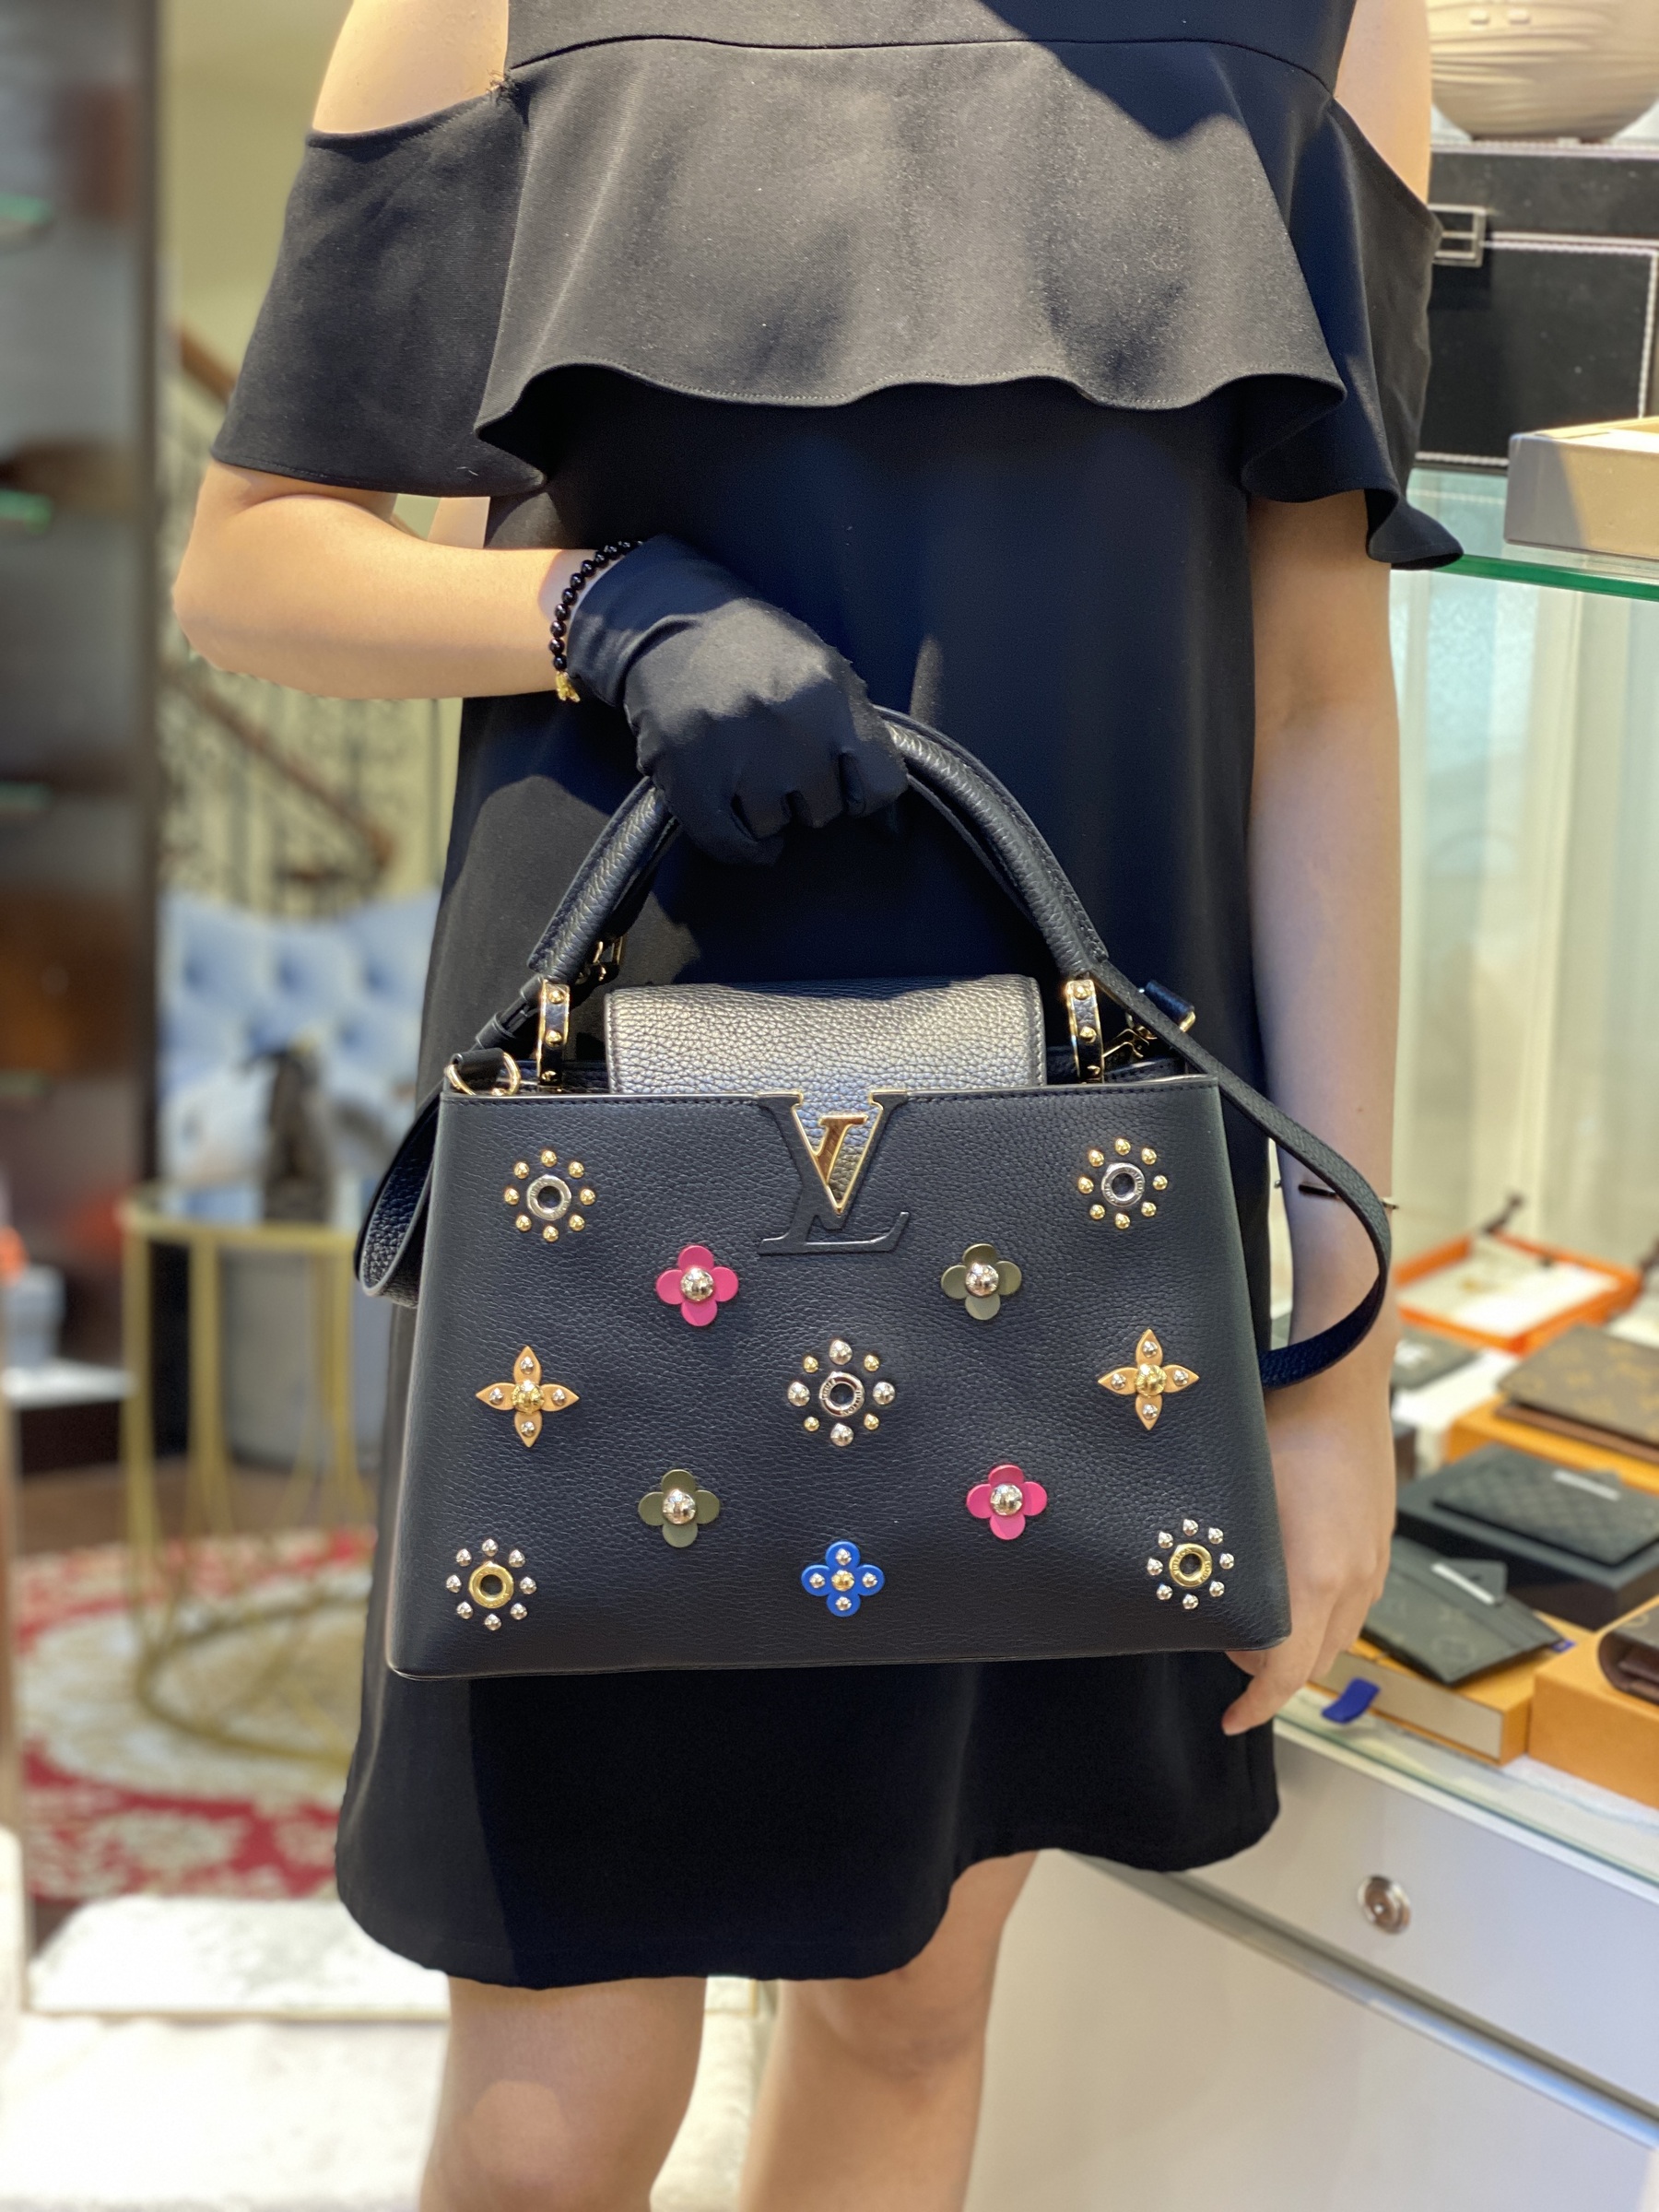 Louis Vuitton, Bags, Authentic Louis Vuitton Capucines Mm Black